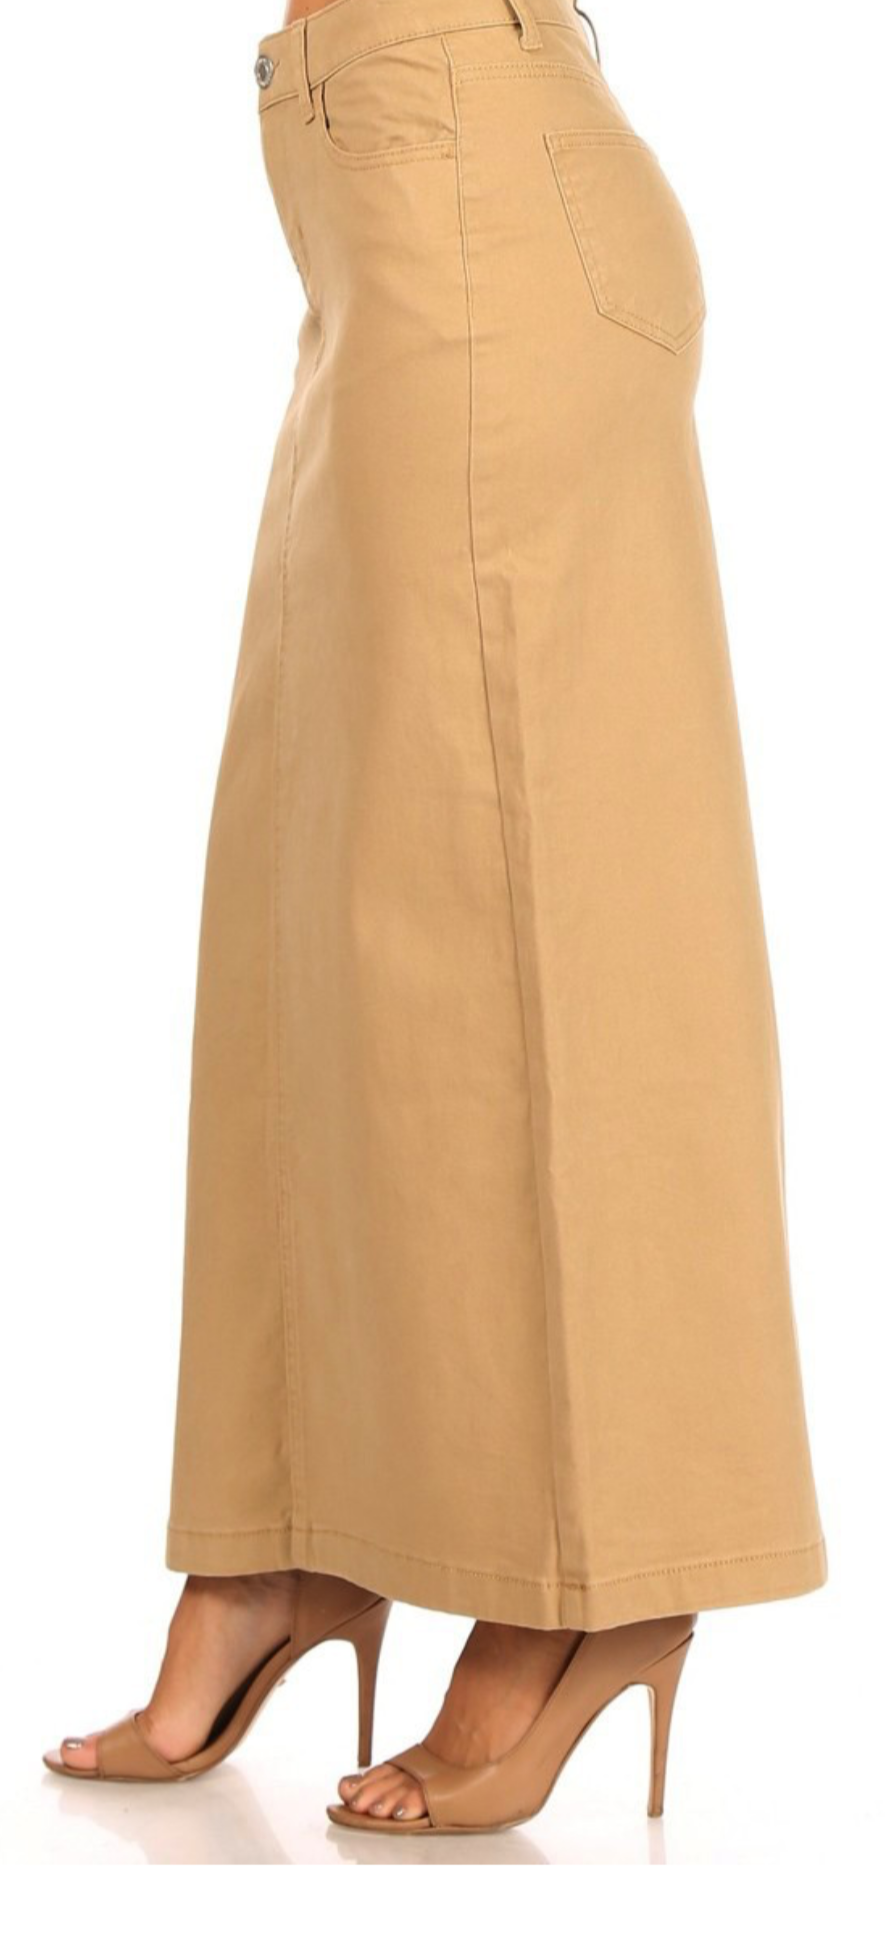 Long Modest Tan Denim Skirt